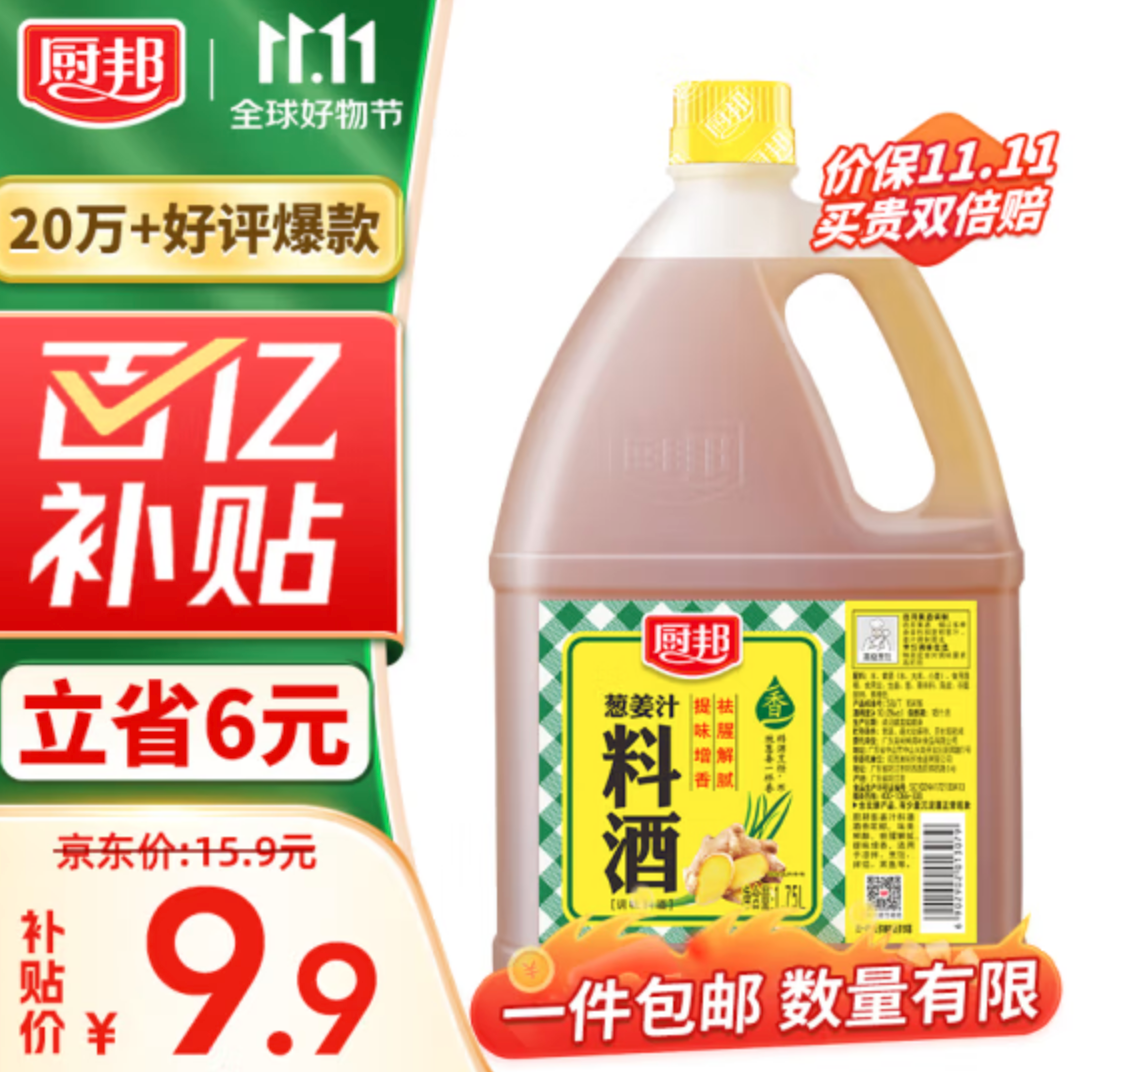 厨邦 葱姜汁料酒 1.75L桶装9.9元包邮